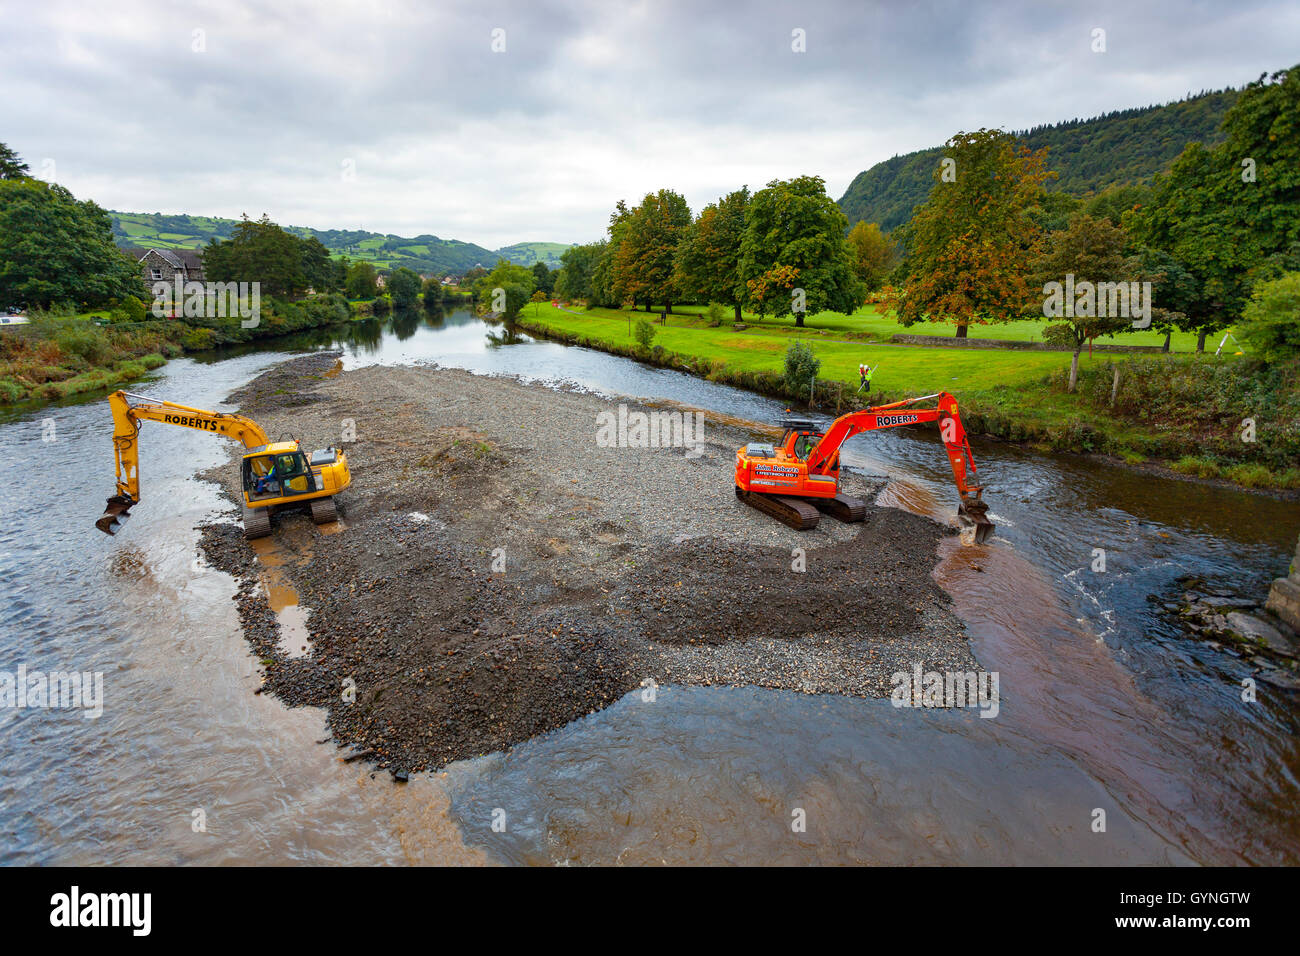 Les défenses contre les inondations - l'autorisation a été accordée et le travail commence sur le dragage de la rivière Conwy pour prévenir les inondations dans la vallée qui est notoire pour l'inondation. Banque D'Images